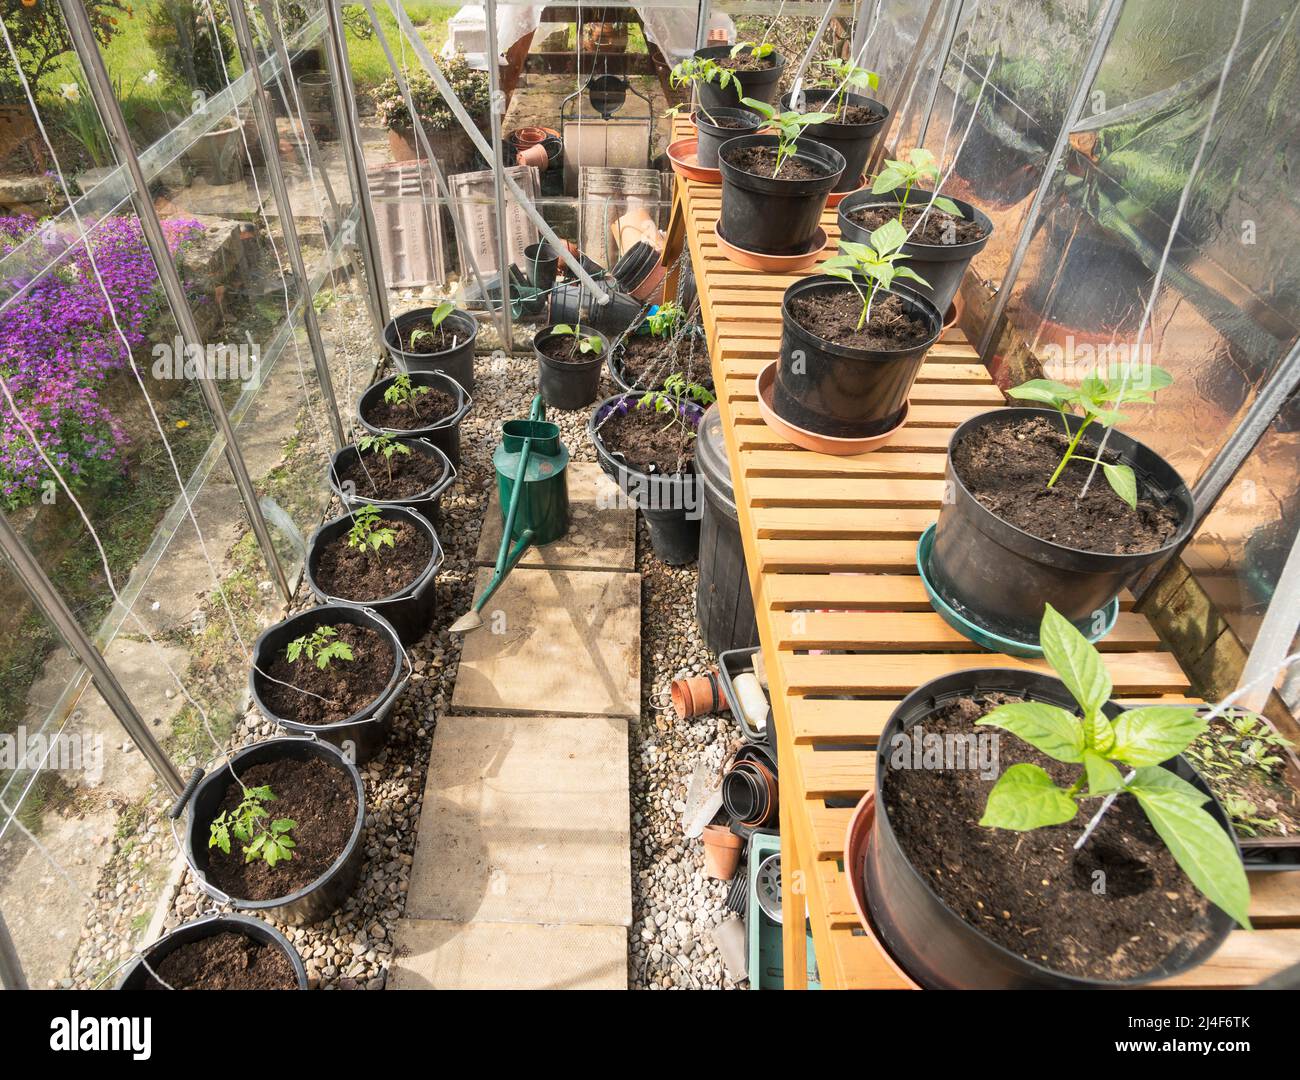 Plantas jóvenes de tomate y pimienta dulce que crecen dentro del invernadero de un jardinero aficionado, Inglaterra, Reino Unido Foto de stock